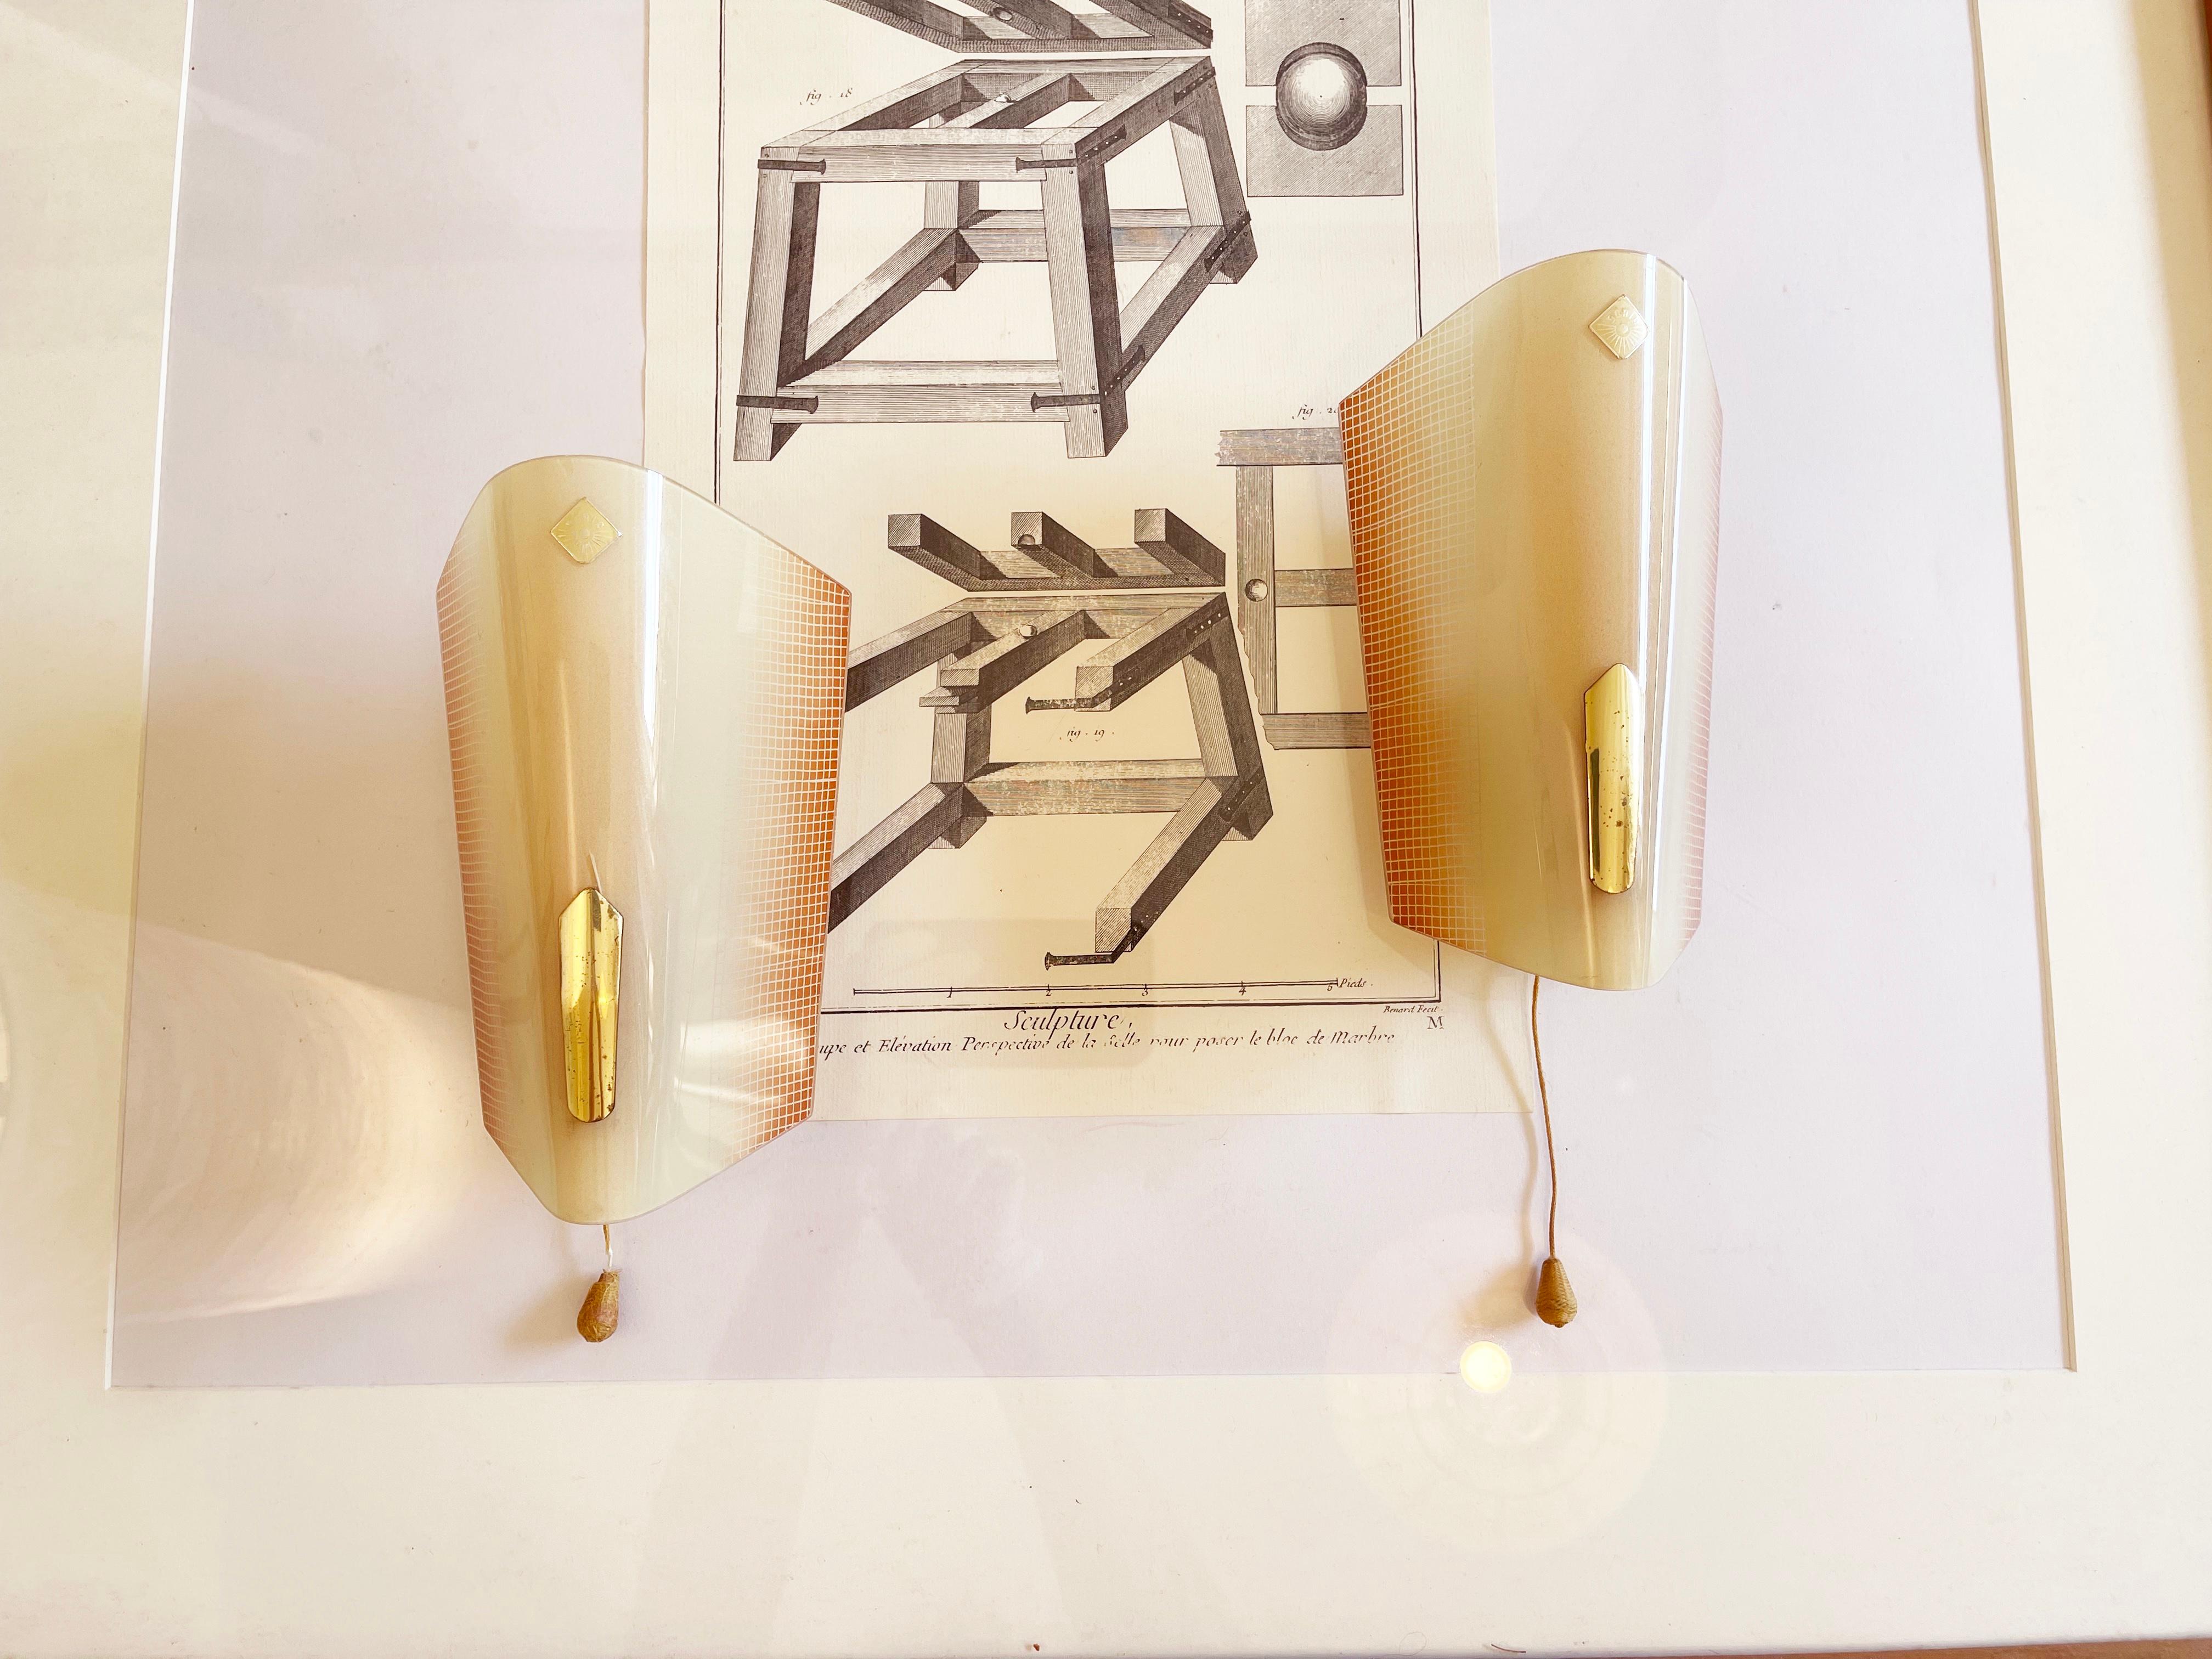 Wunderschön gestaltete Art Deco Wandlampen / Wandleuchter von 'Doria Leuchten', einem der bekanntesten deutschen Hersteller von hochwertigen Designleuchten.
Sie kommen in einer eleganten, schlanken Trichterform daher, die mit dem Schachbrettmuster